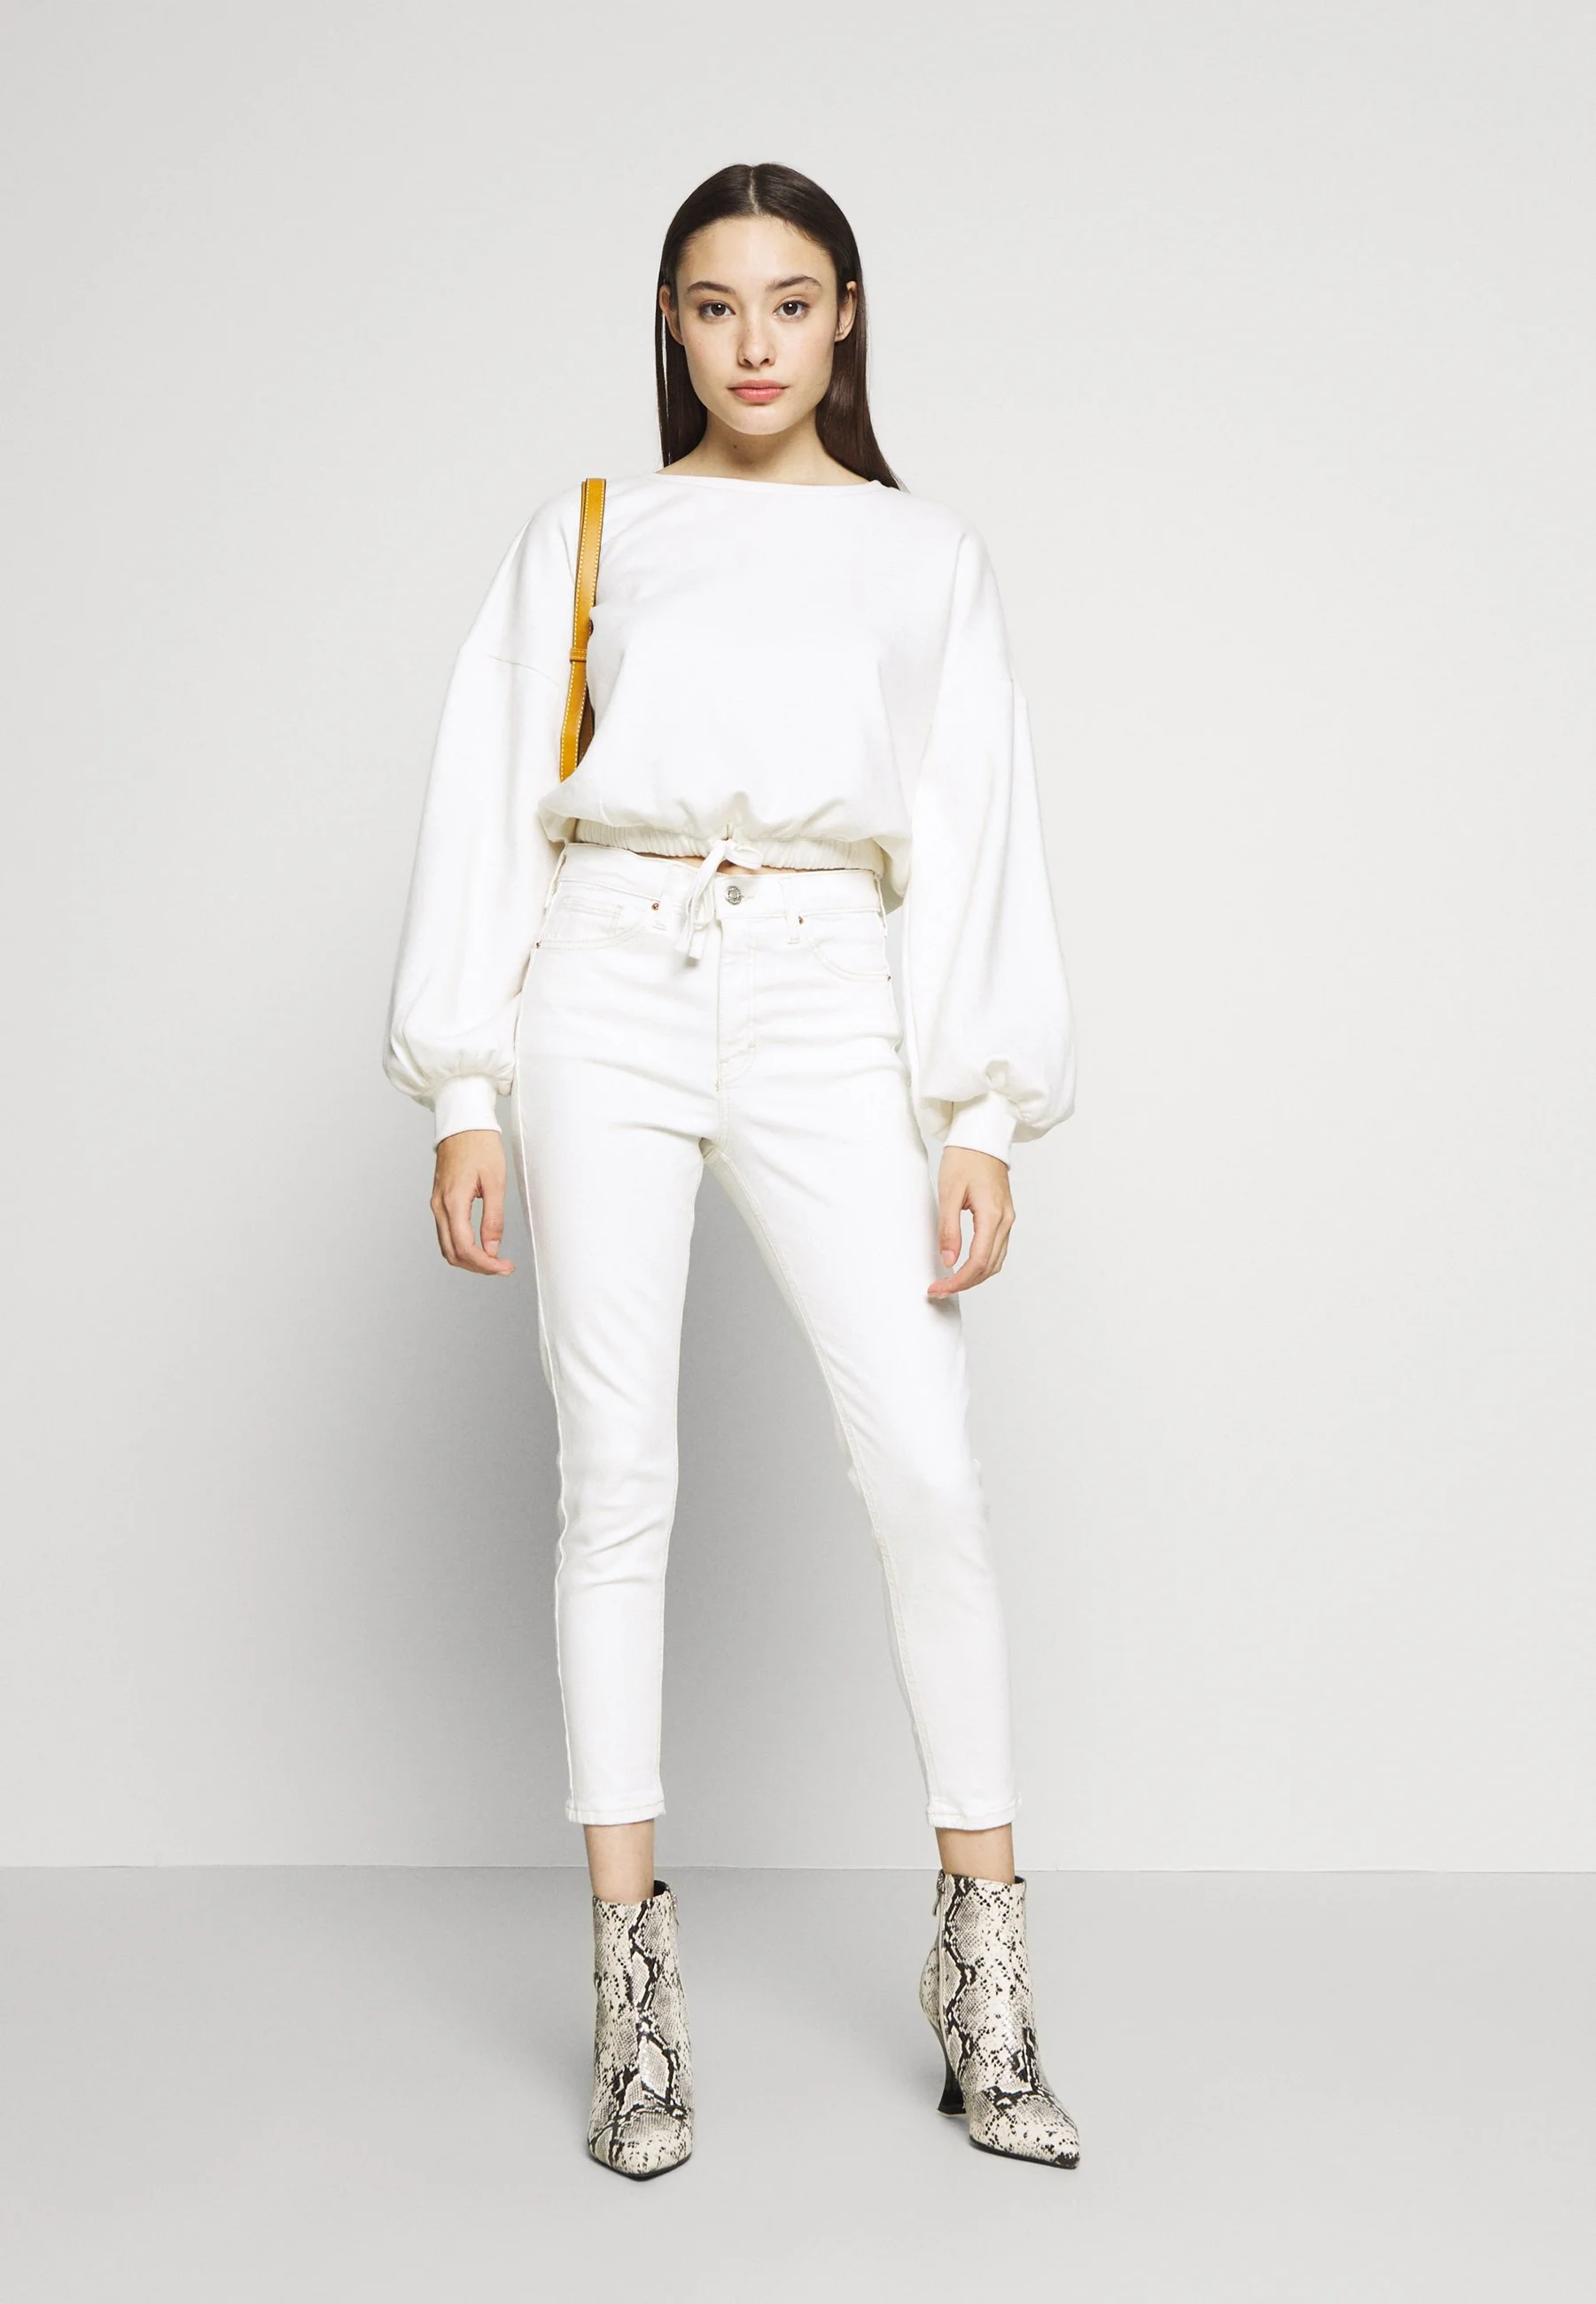 Topshop + Petite Jamie Jeans Skinny Fit in White